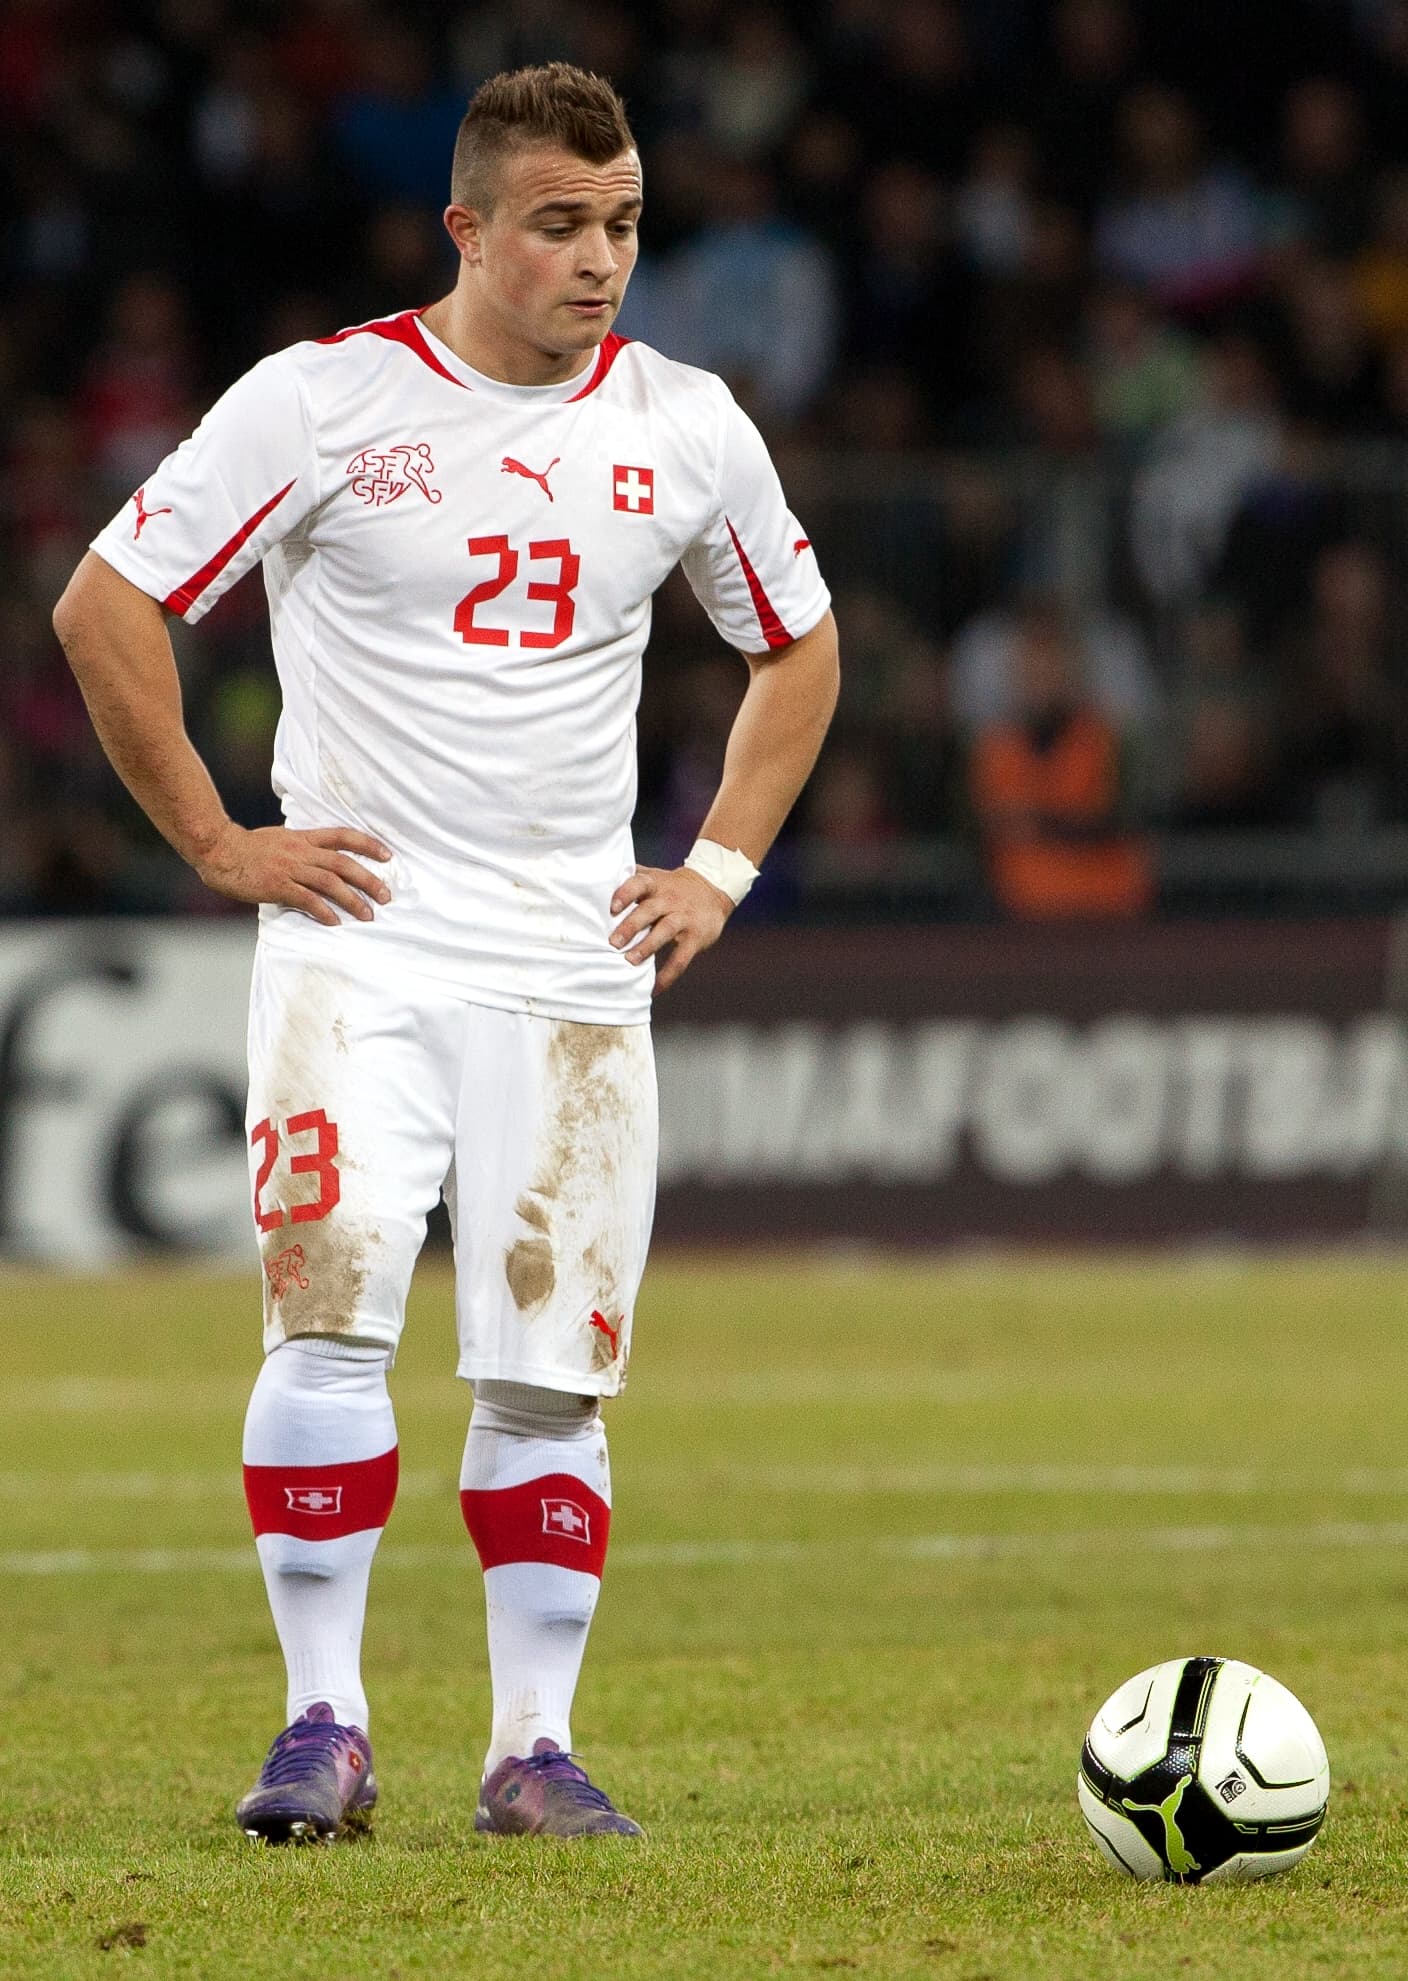 Lyon bid for Liverpool player Xherdan Shaqiri.